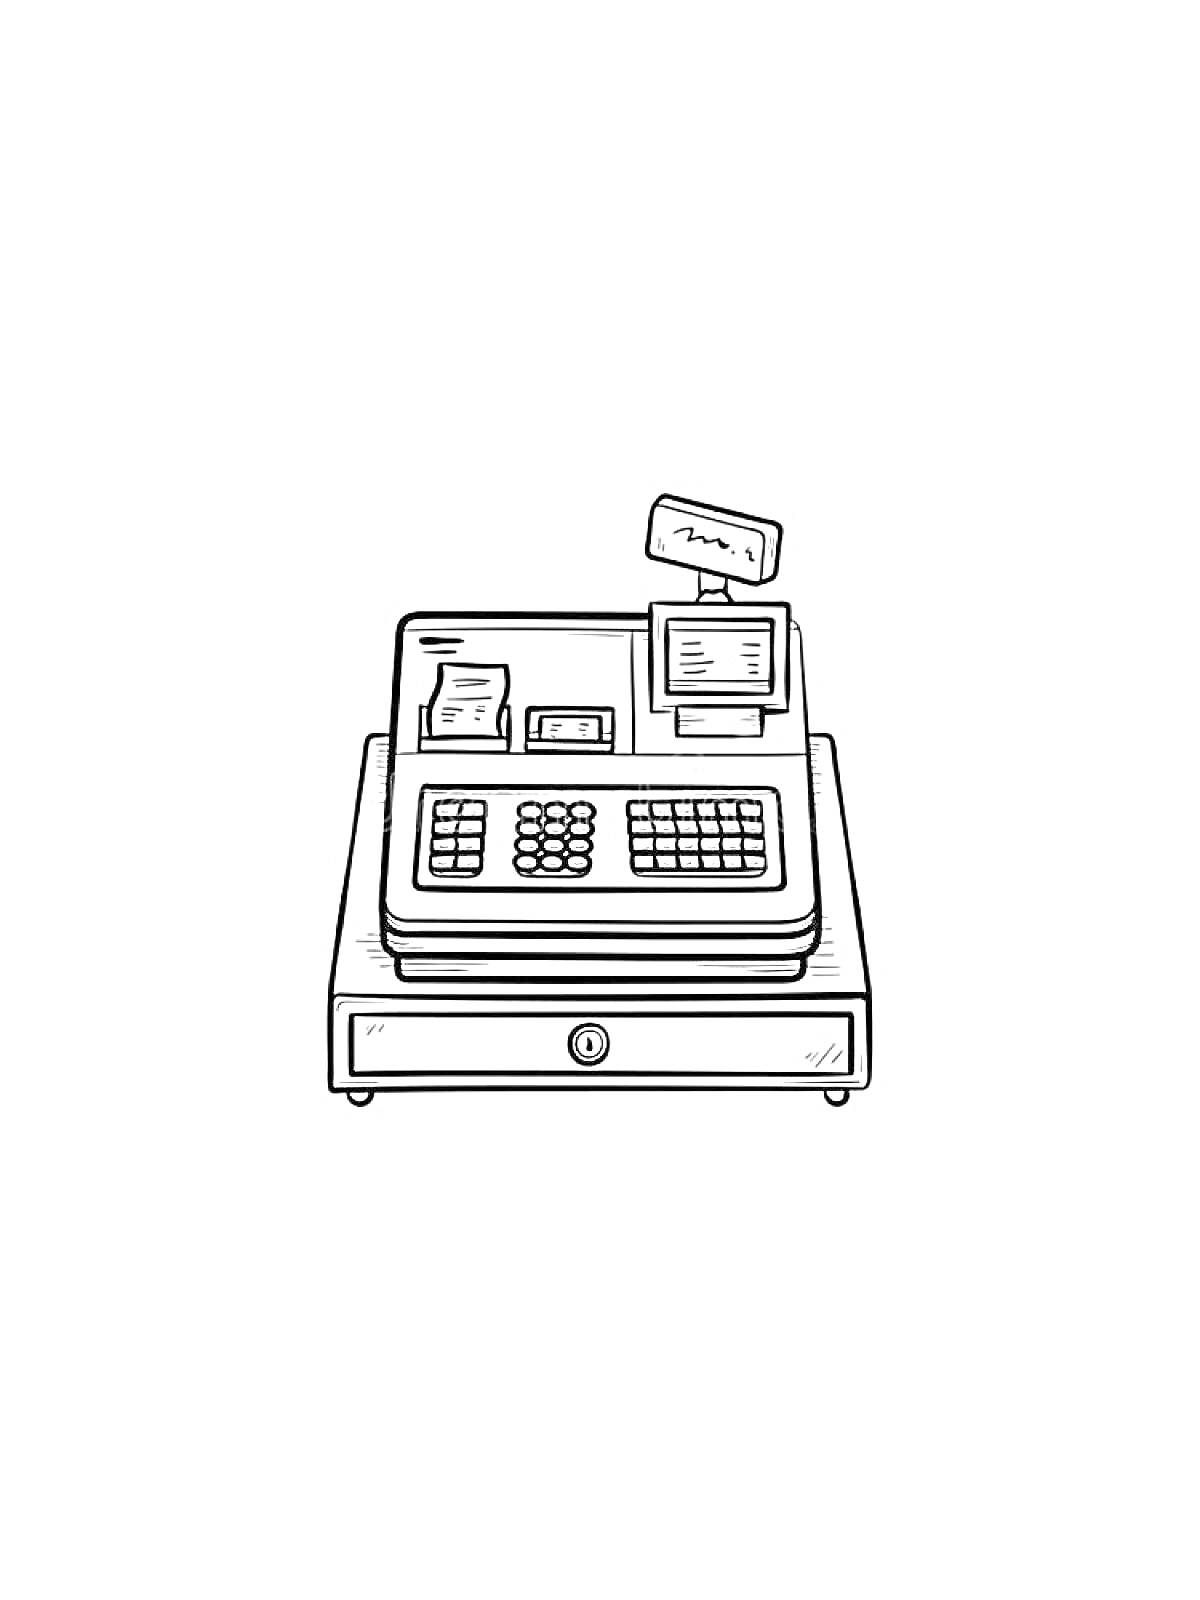 Раскраска Кассовый аппарат с клавиатурой, дисплеем, квитанцией и кассовым ящиком